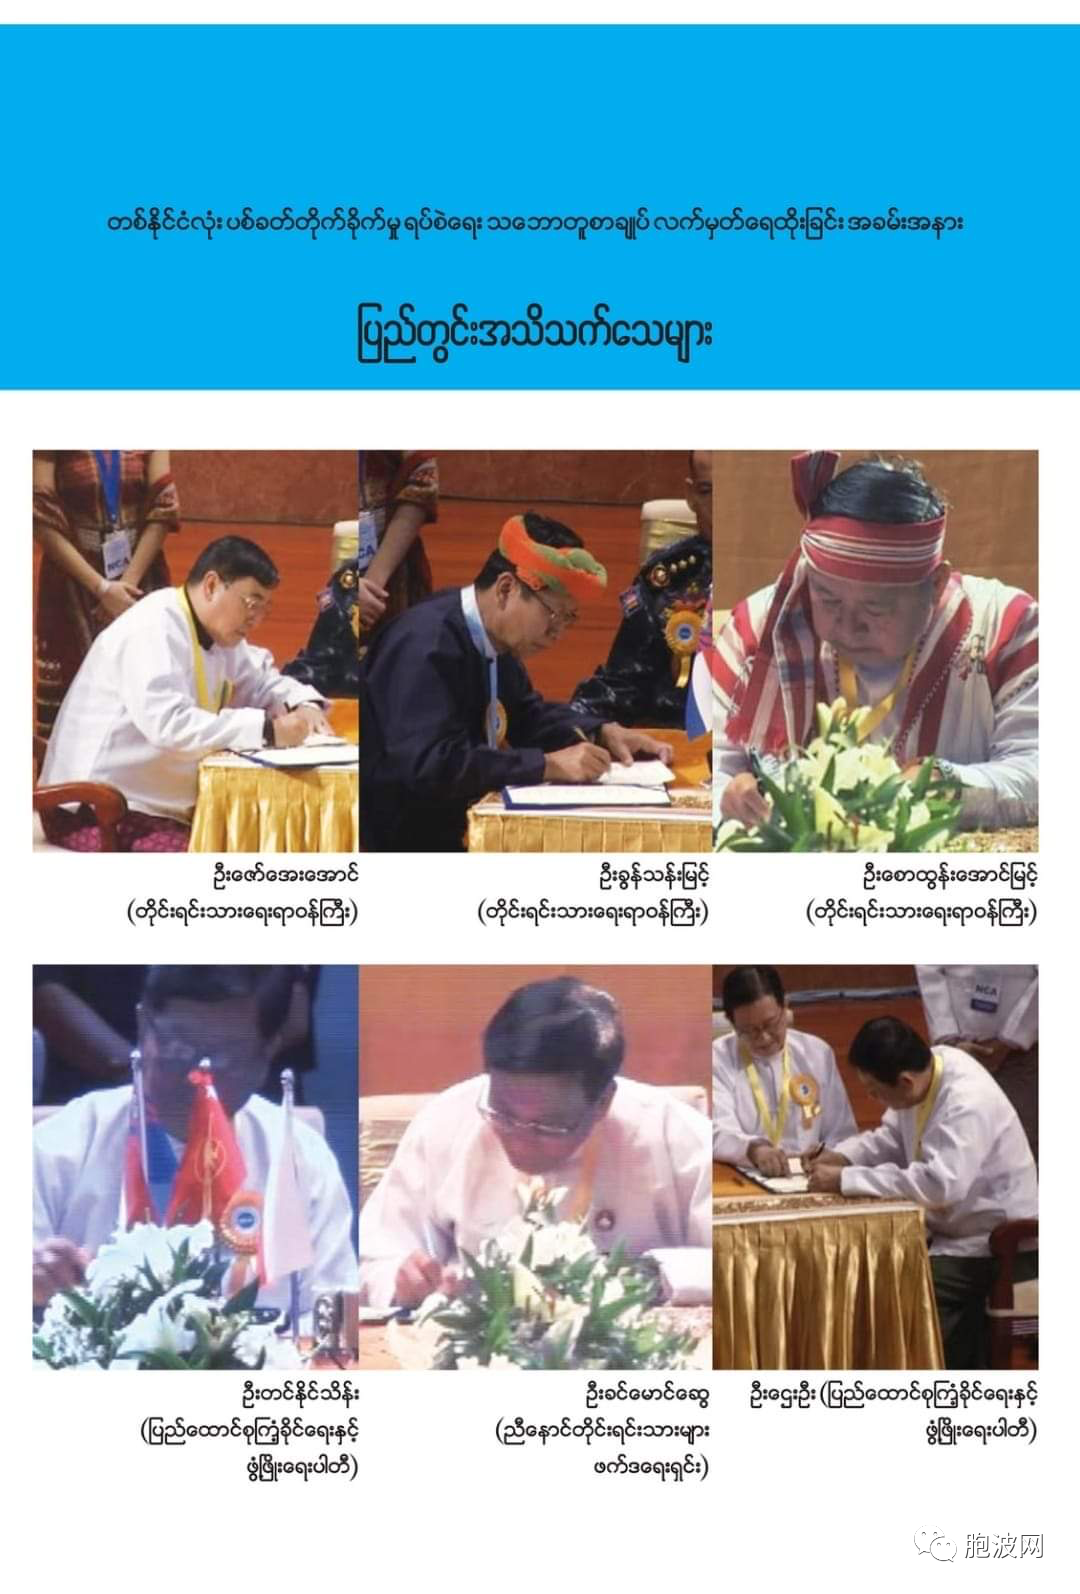 今天是缅甸全国停战协议签署七周年纪念！